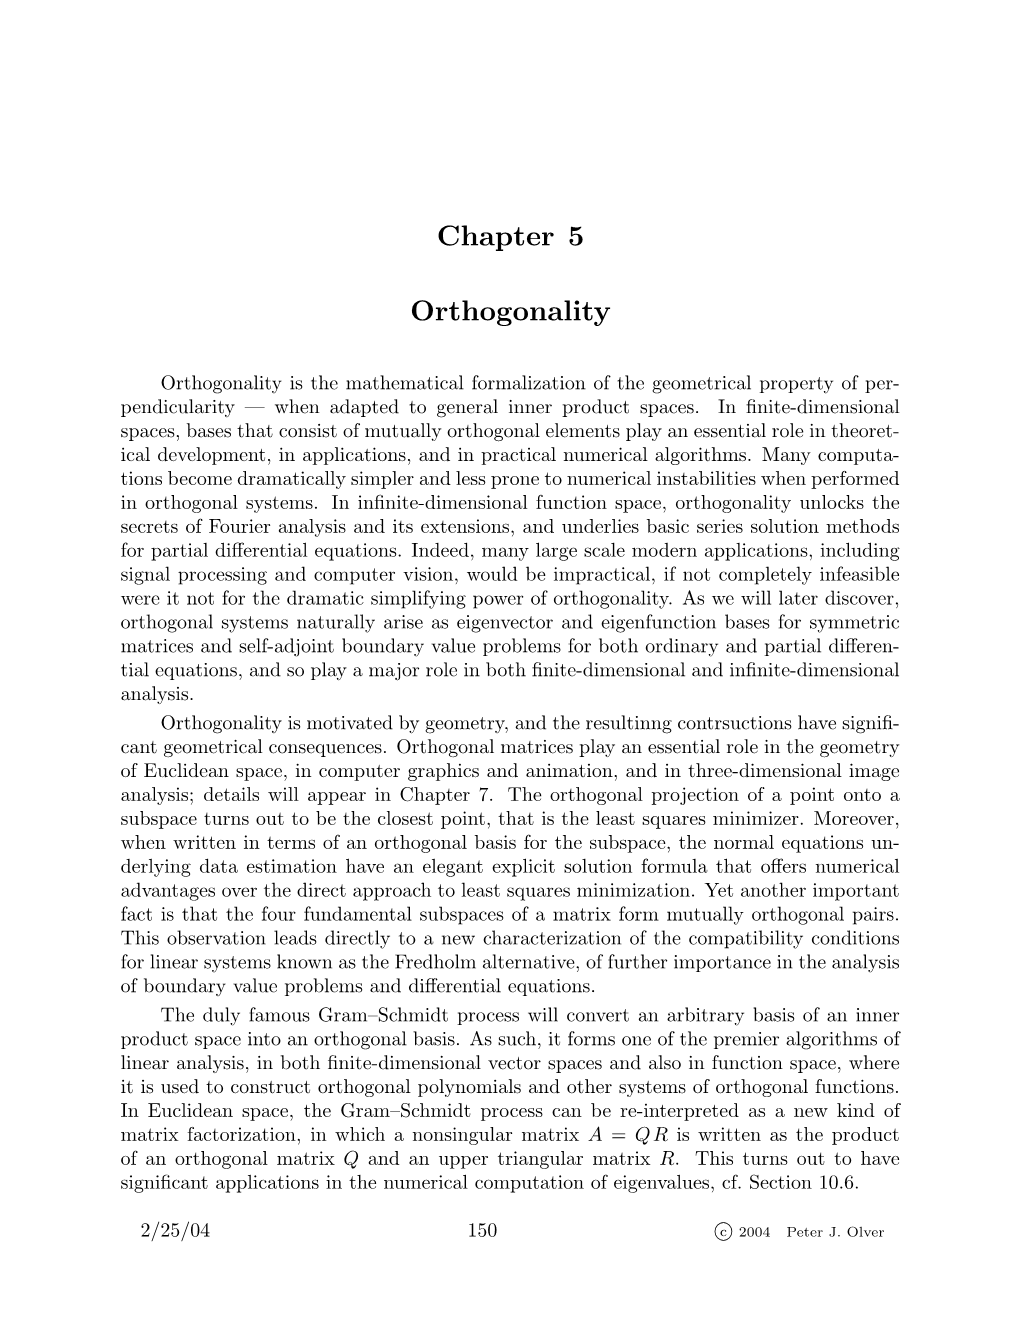 Chapter 5 Orthogonality